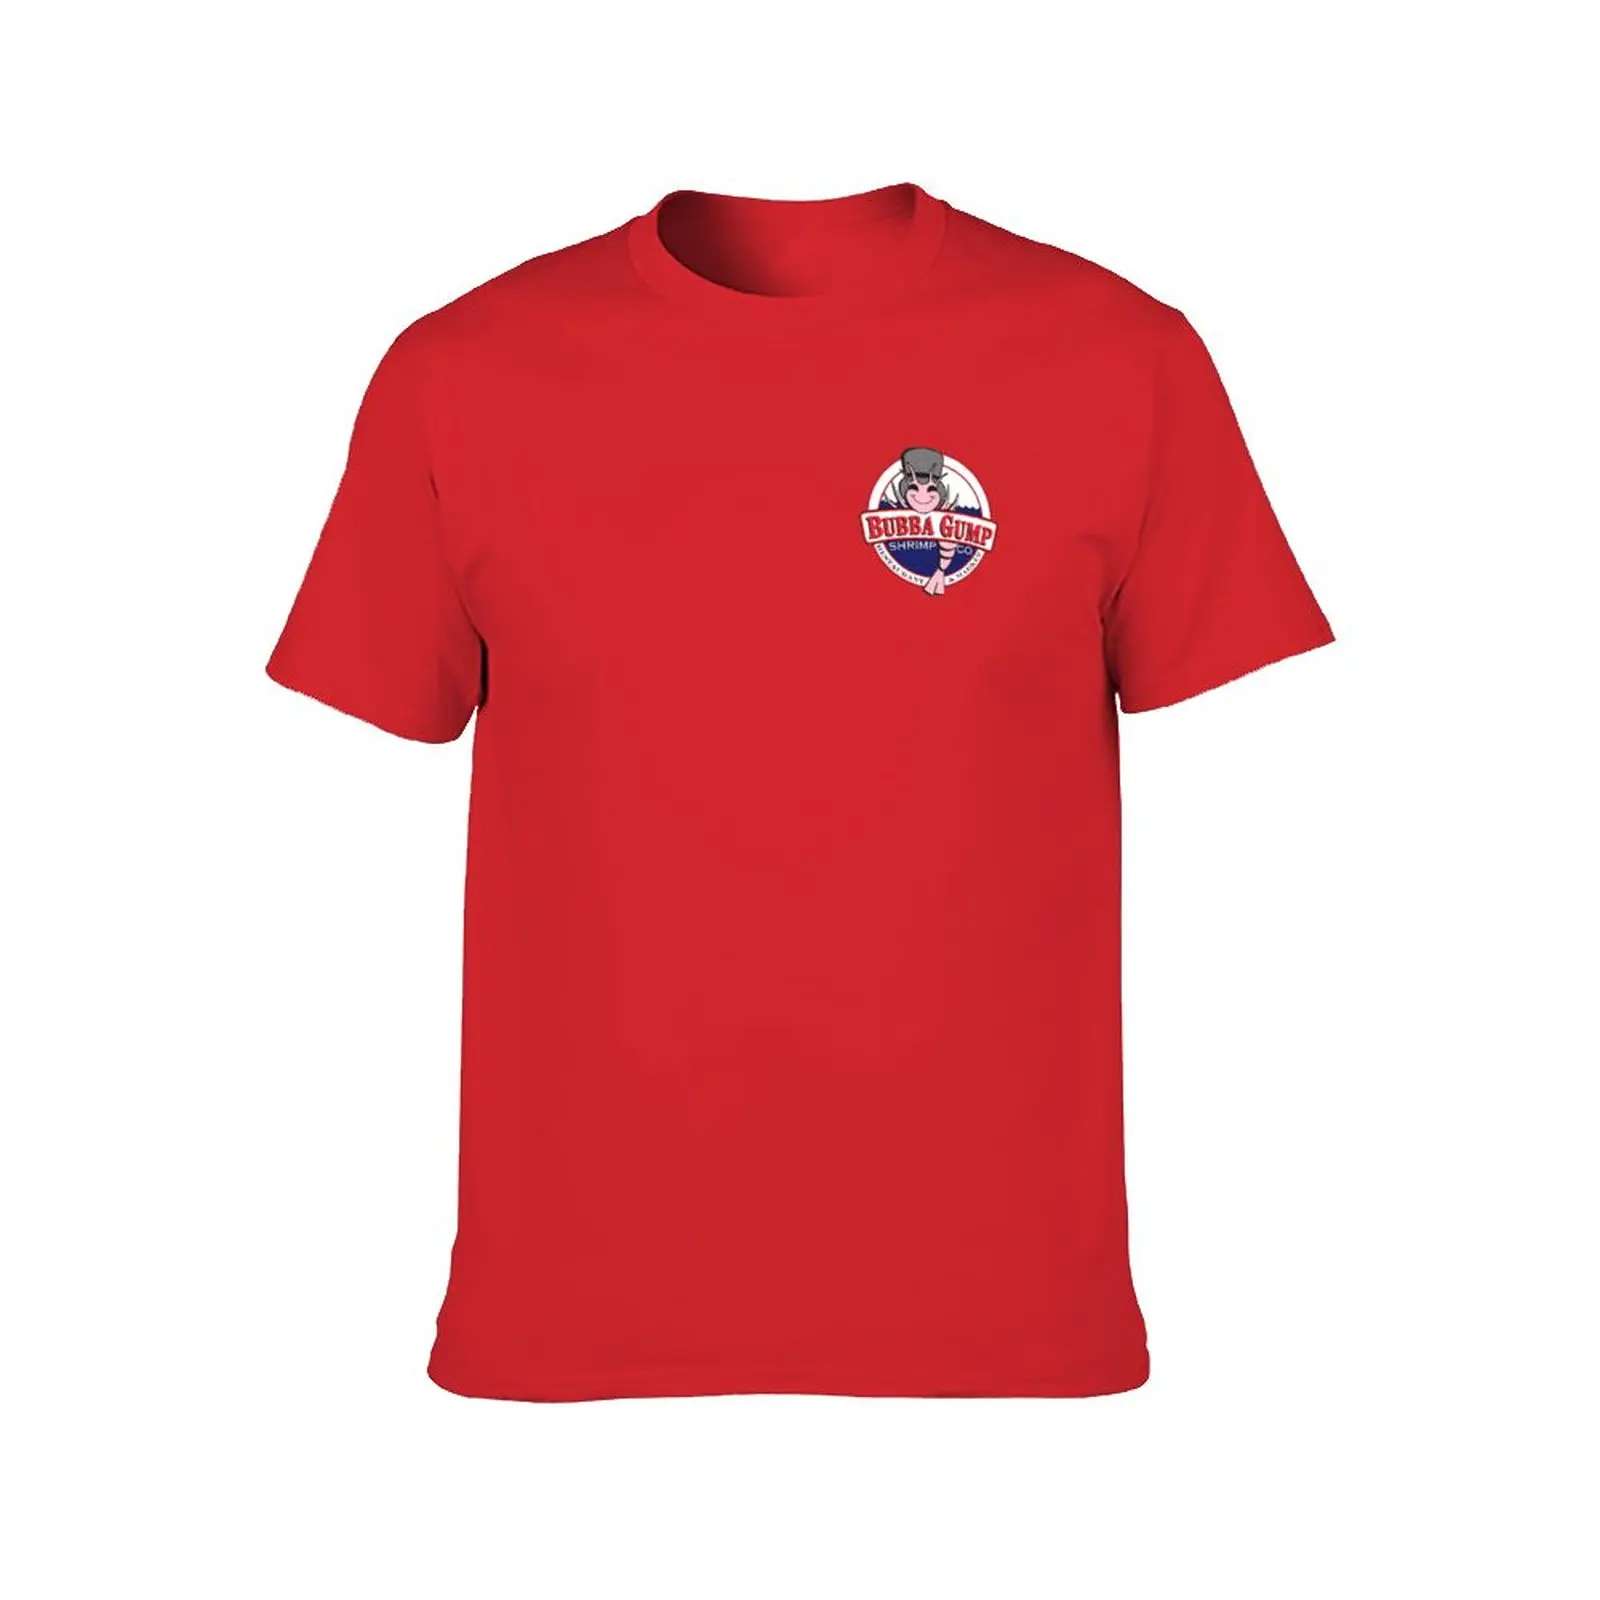 Bubba Gump Shrimp co. Футболка, быстросохнущая футболка, великолепная футболка, мужские забавные футболки Изображение 1